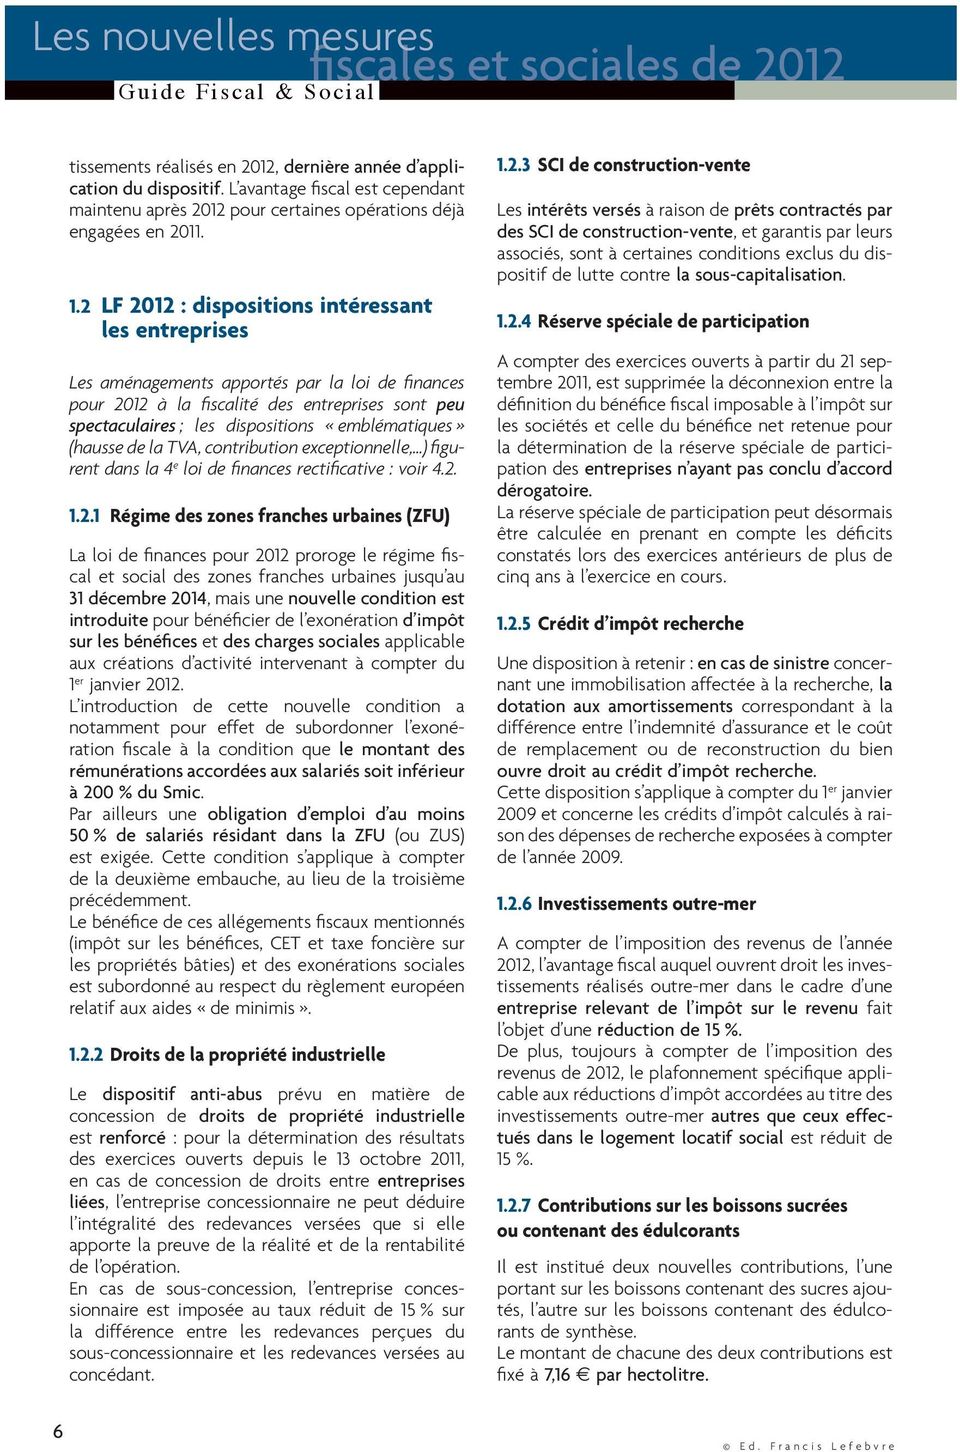 2 LF 2012 : dispositions intéressant les entreprises Les aménagements apportés par la loi de finances pour 2012 à la fiscalité des entreprises sont peu spectaculaires ; les dispositions